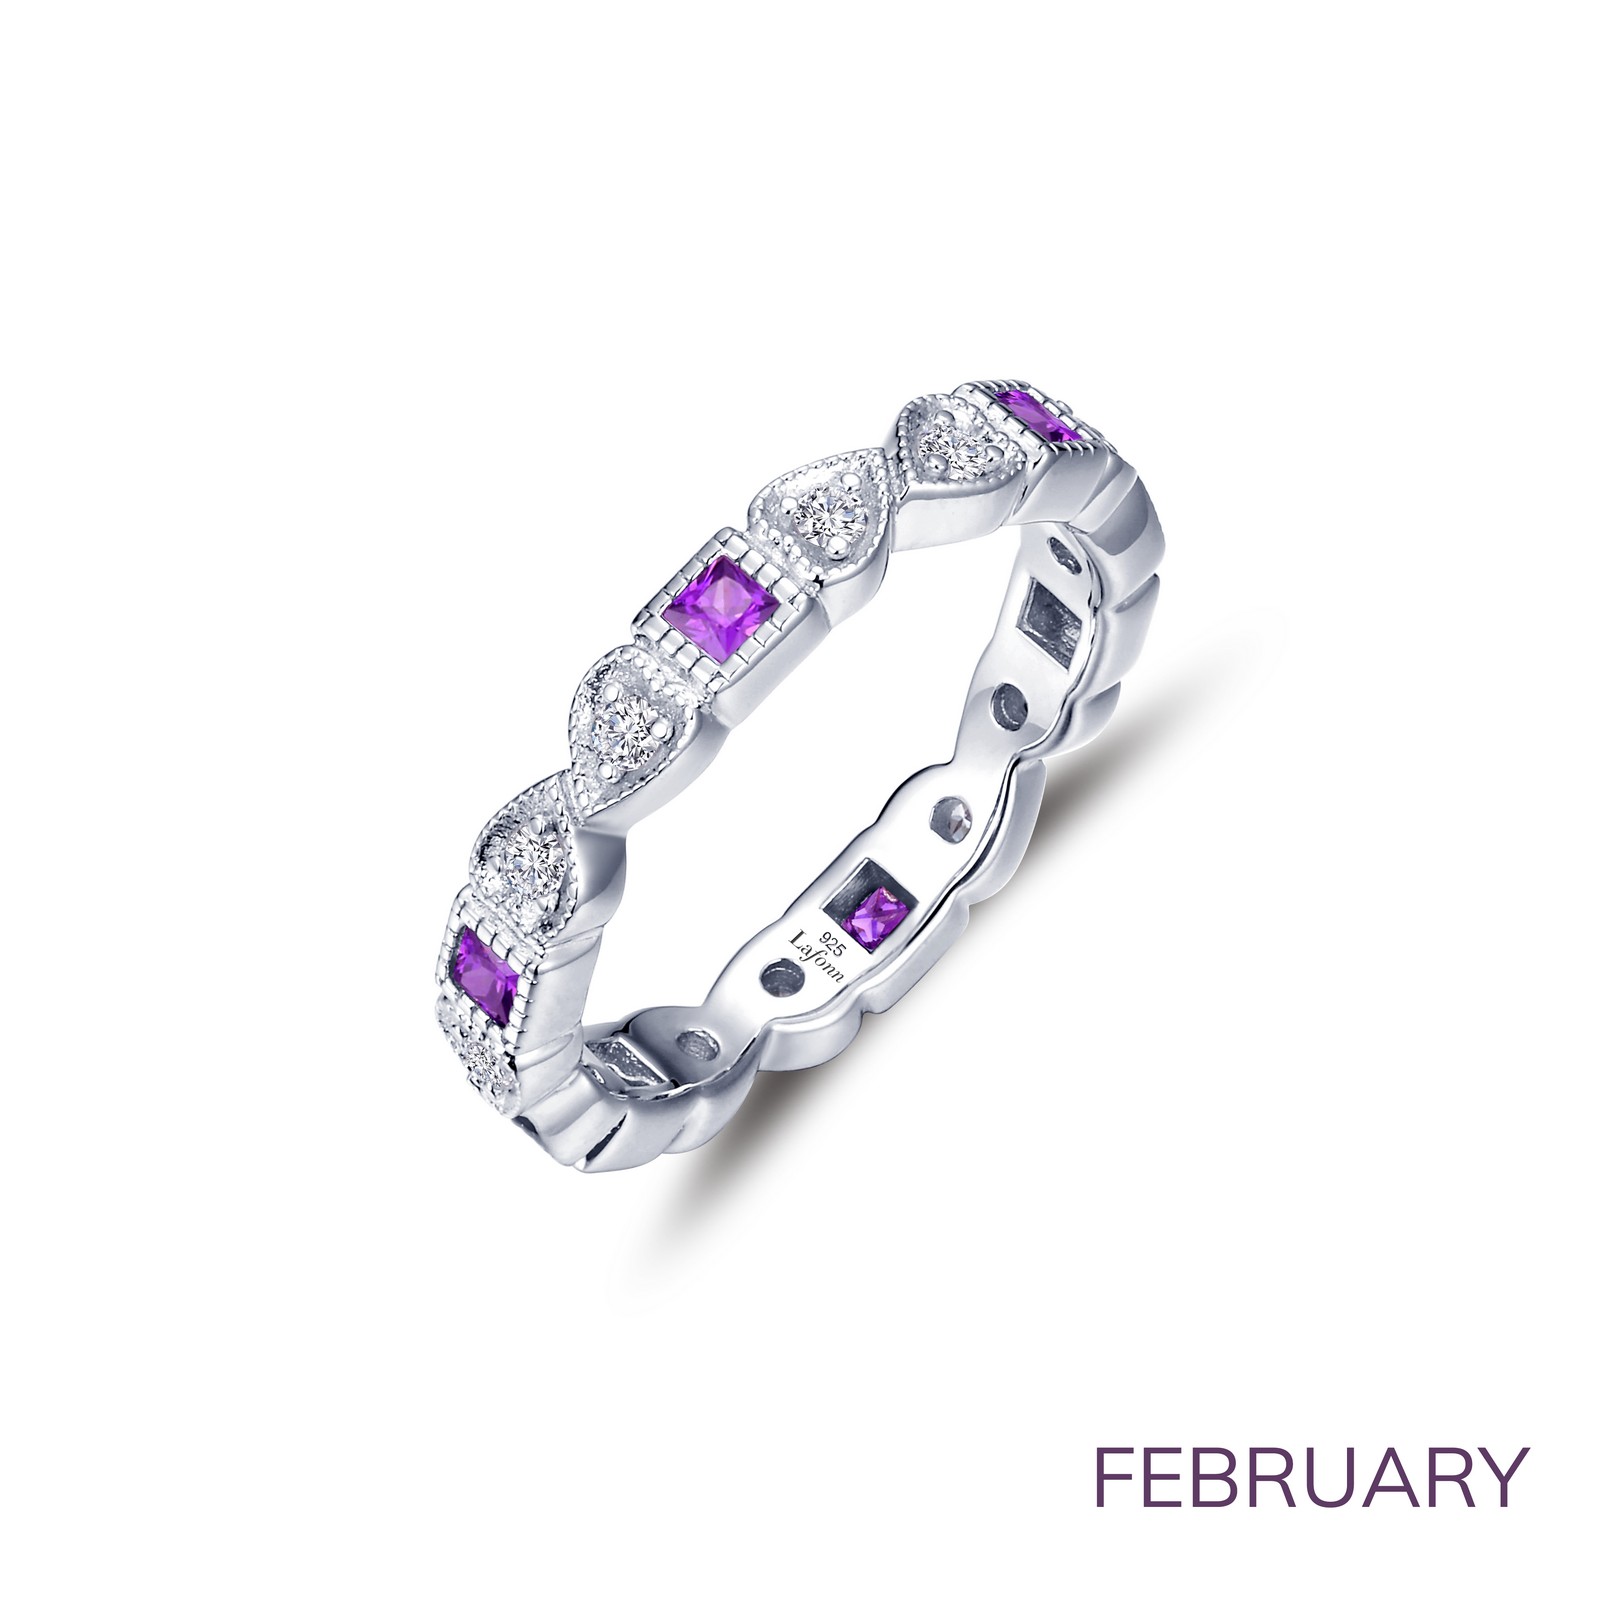 February Birthstone Ring by Lafonn